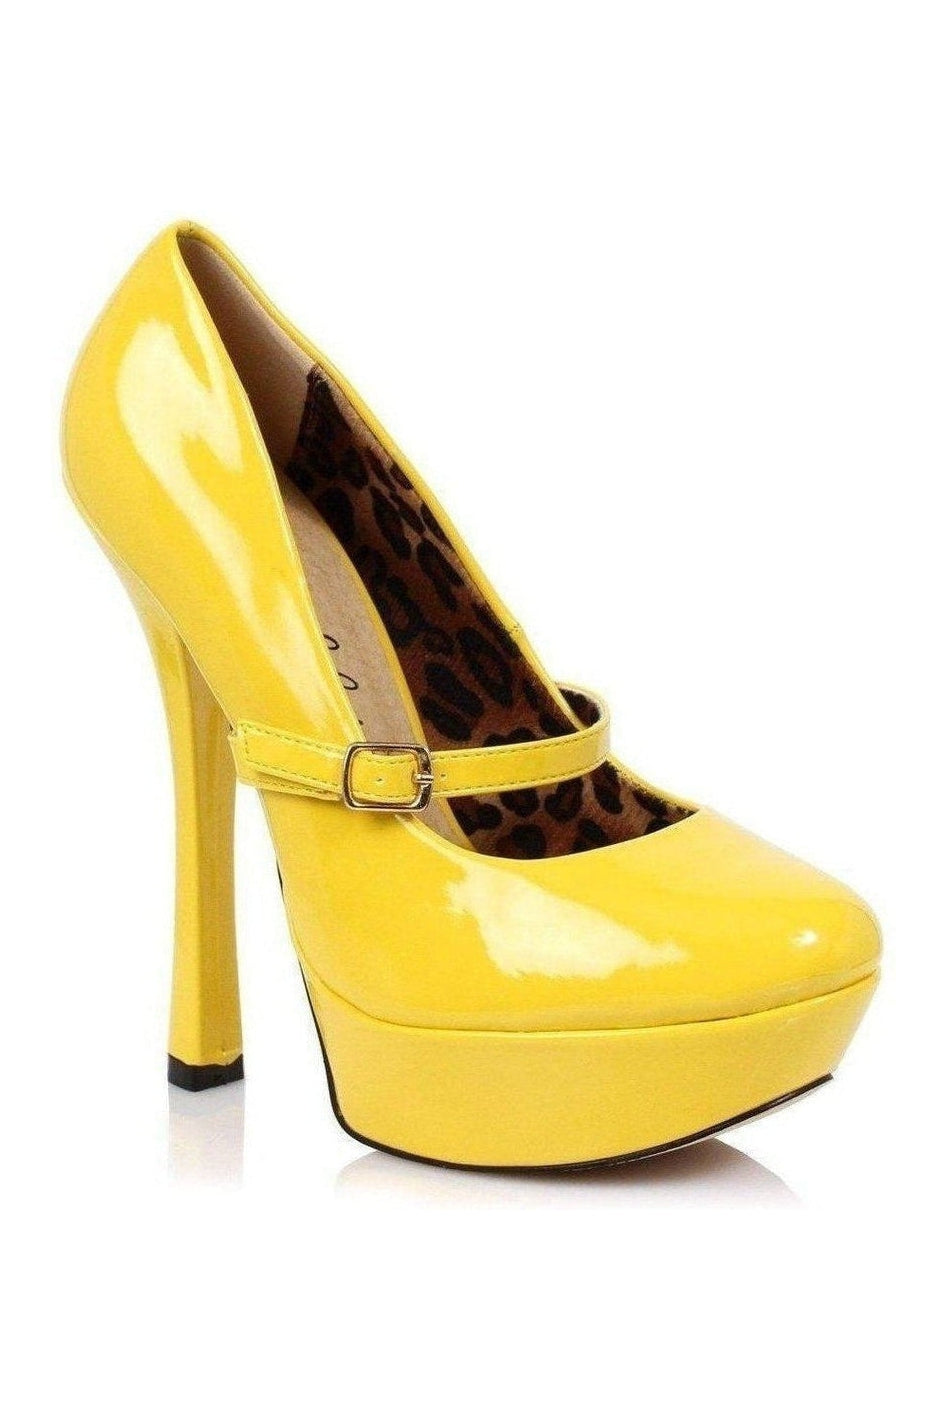 633-PAYTON Platform Pump | Yellow Patent-Pumps- Stripper Shoes at SEXYSHOES.COM